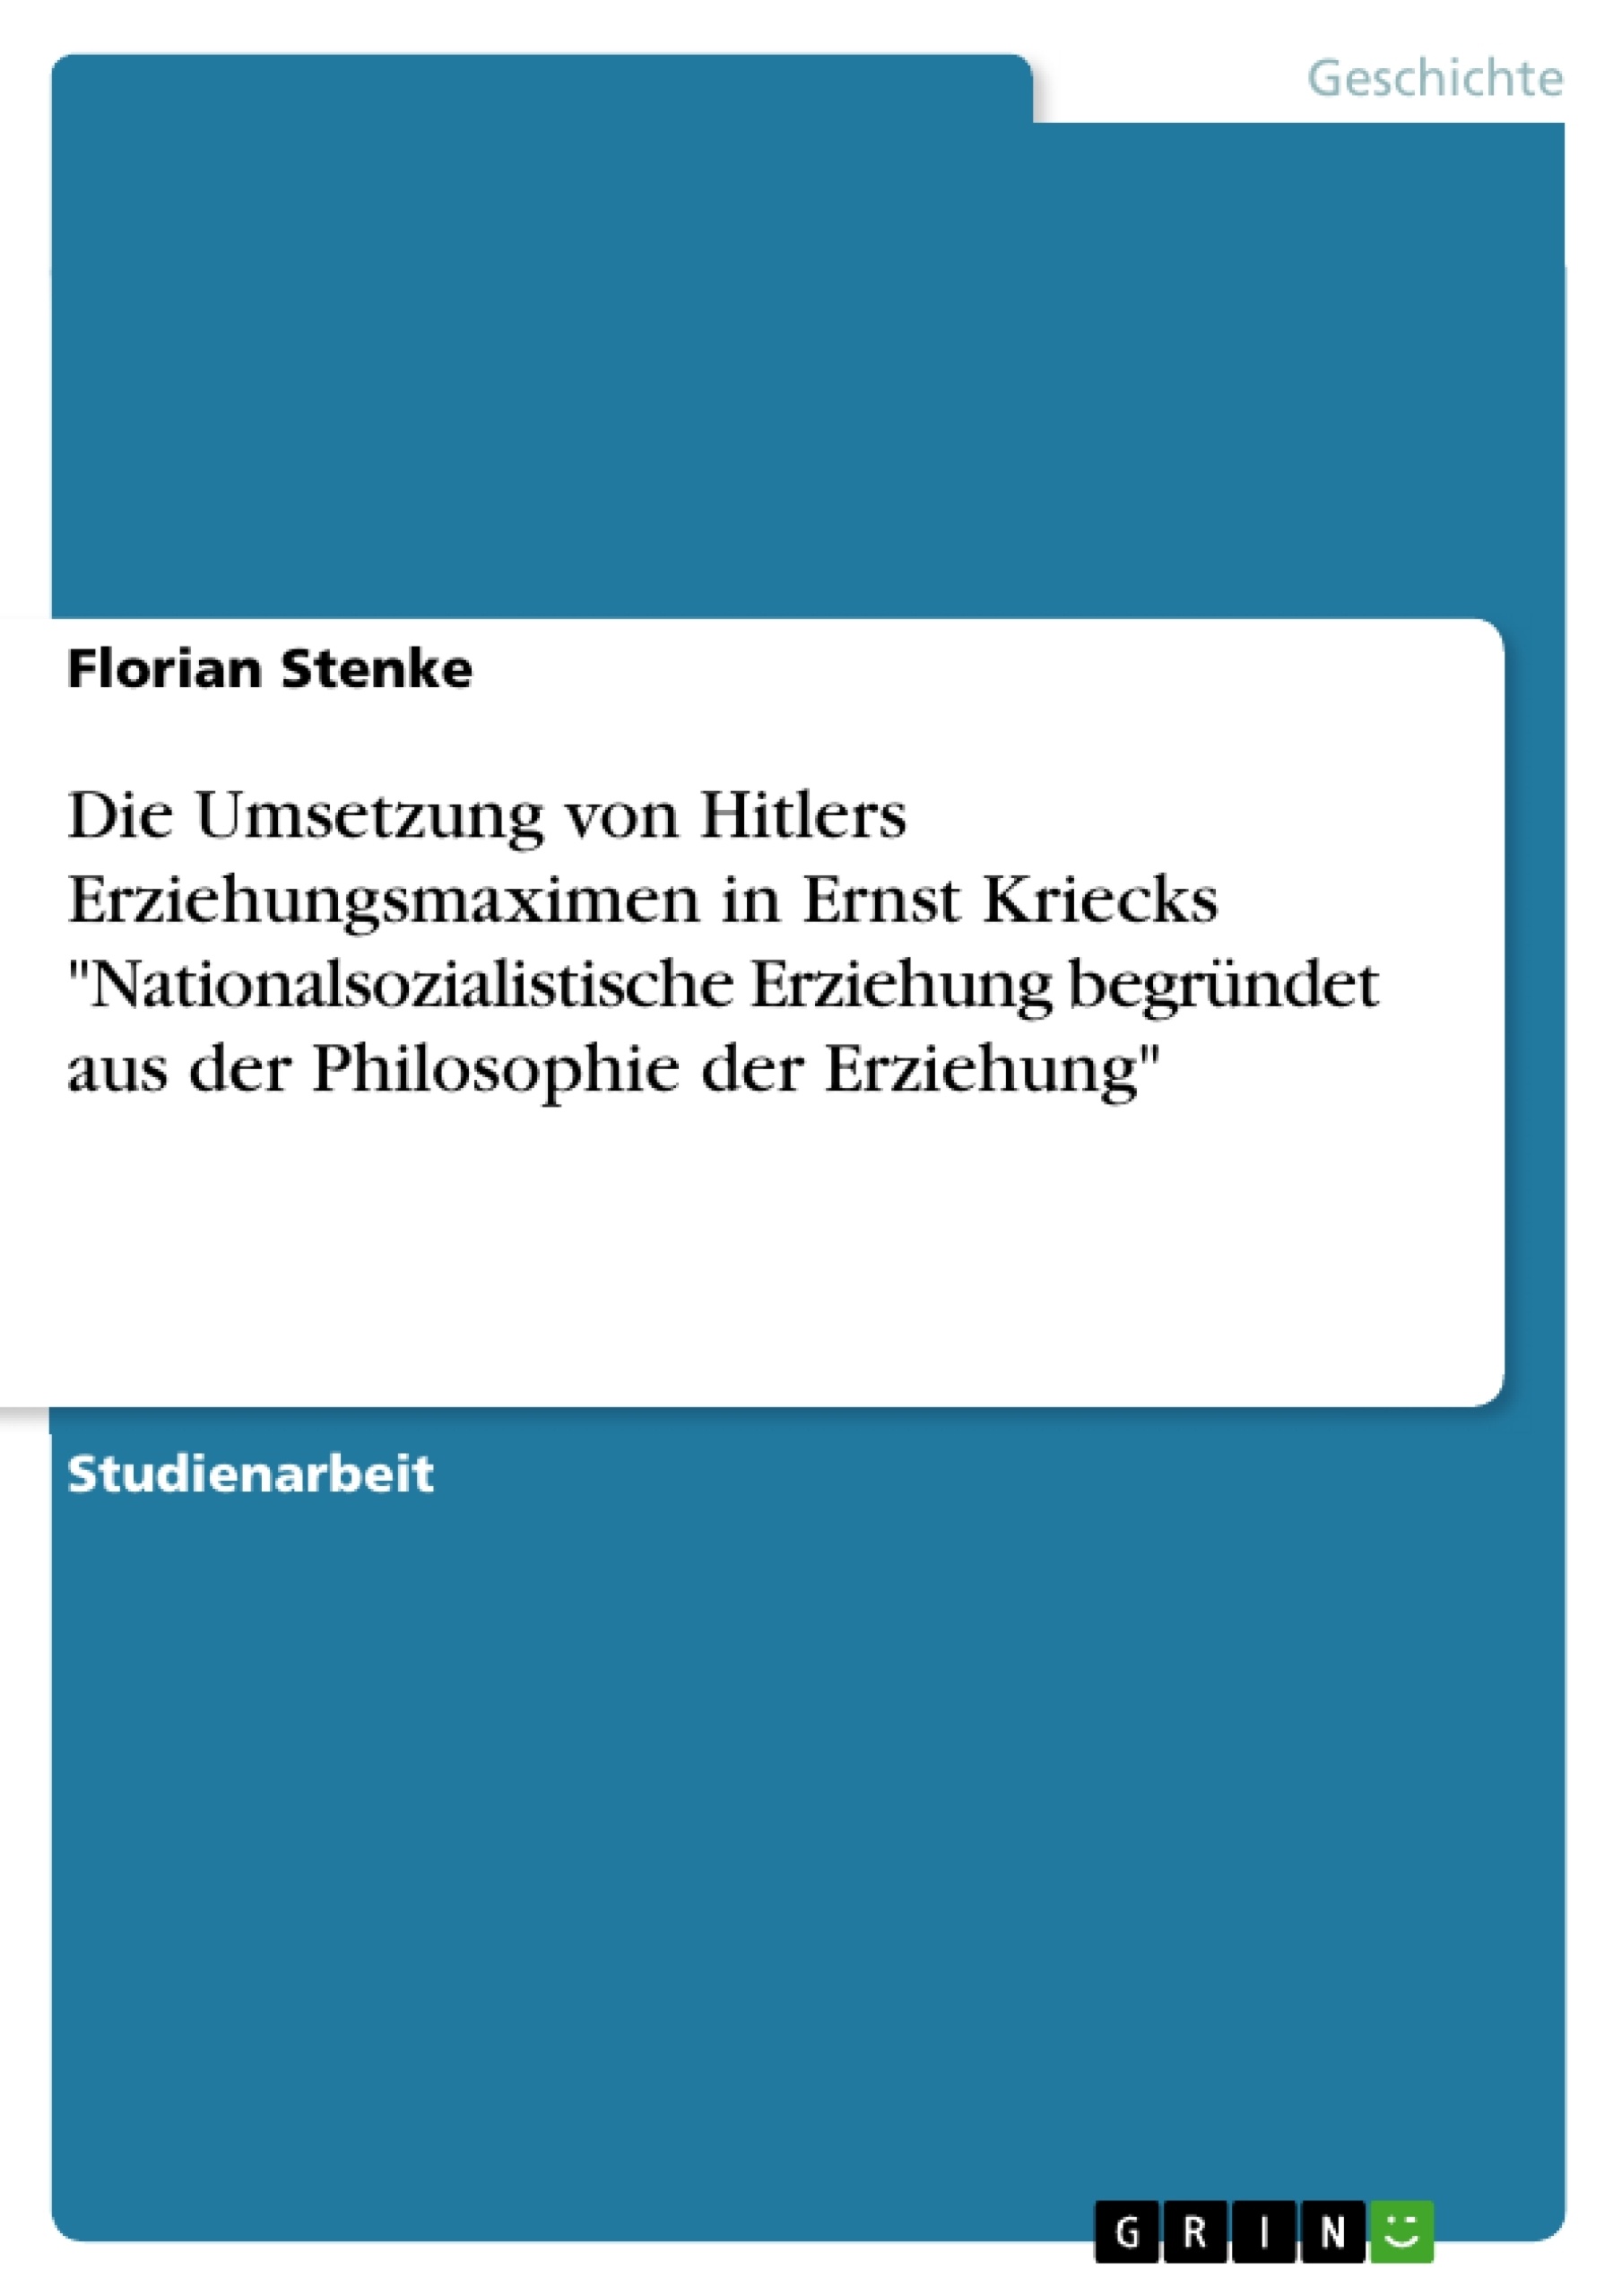 Titel: Die Umsetzung von Hitlers Erziehungsmaximen in Ernst Kriecks "Nationalsozialistische Erziehung begründet aus der Philosophie der Erziehung"